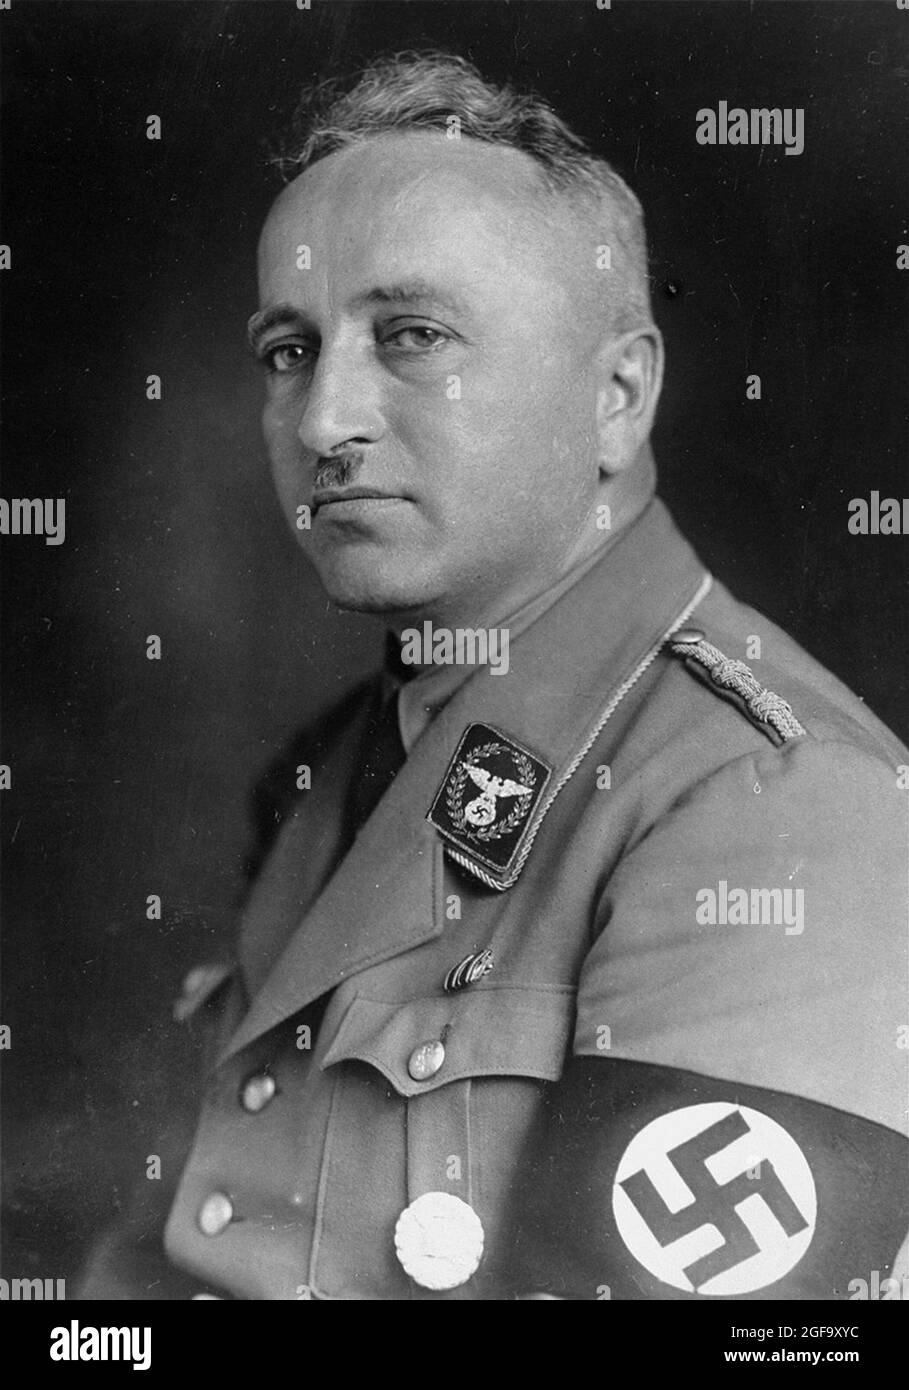 Ein Porträt des Nazi-Führers Robert Ley. Von 1933 bis 1945 war er Vorsitzender der Deutschen Arbeitsfront. Er wurde 1945 verhaftet und beging im Gefängnis Selbstmord. Stockfoto